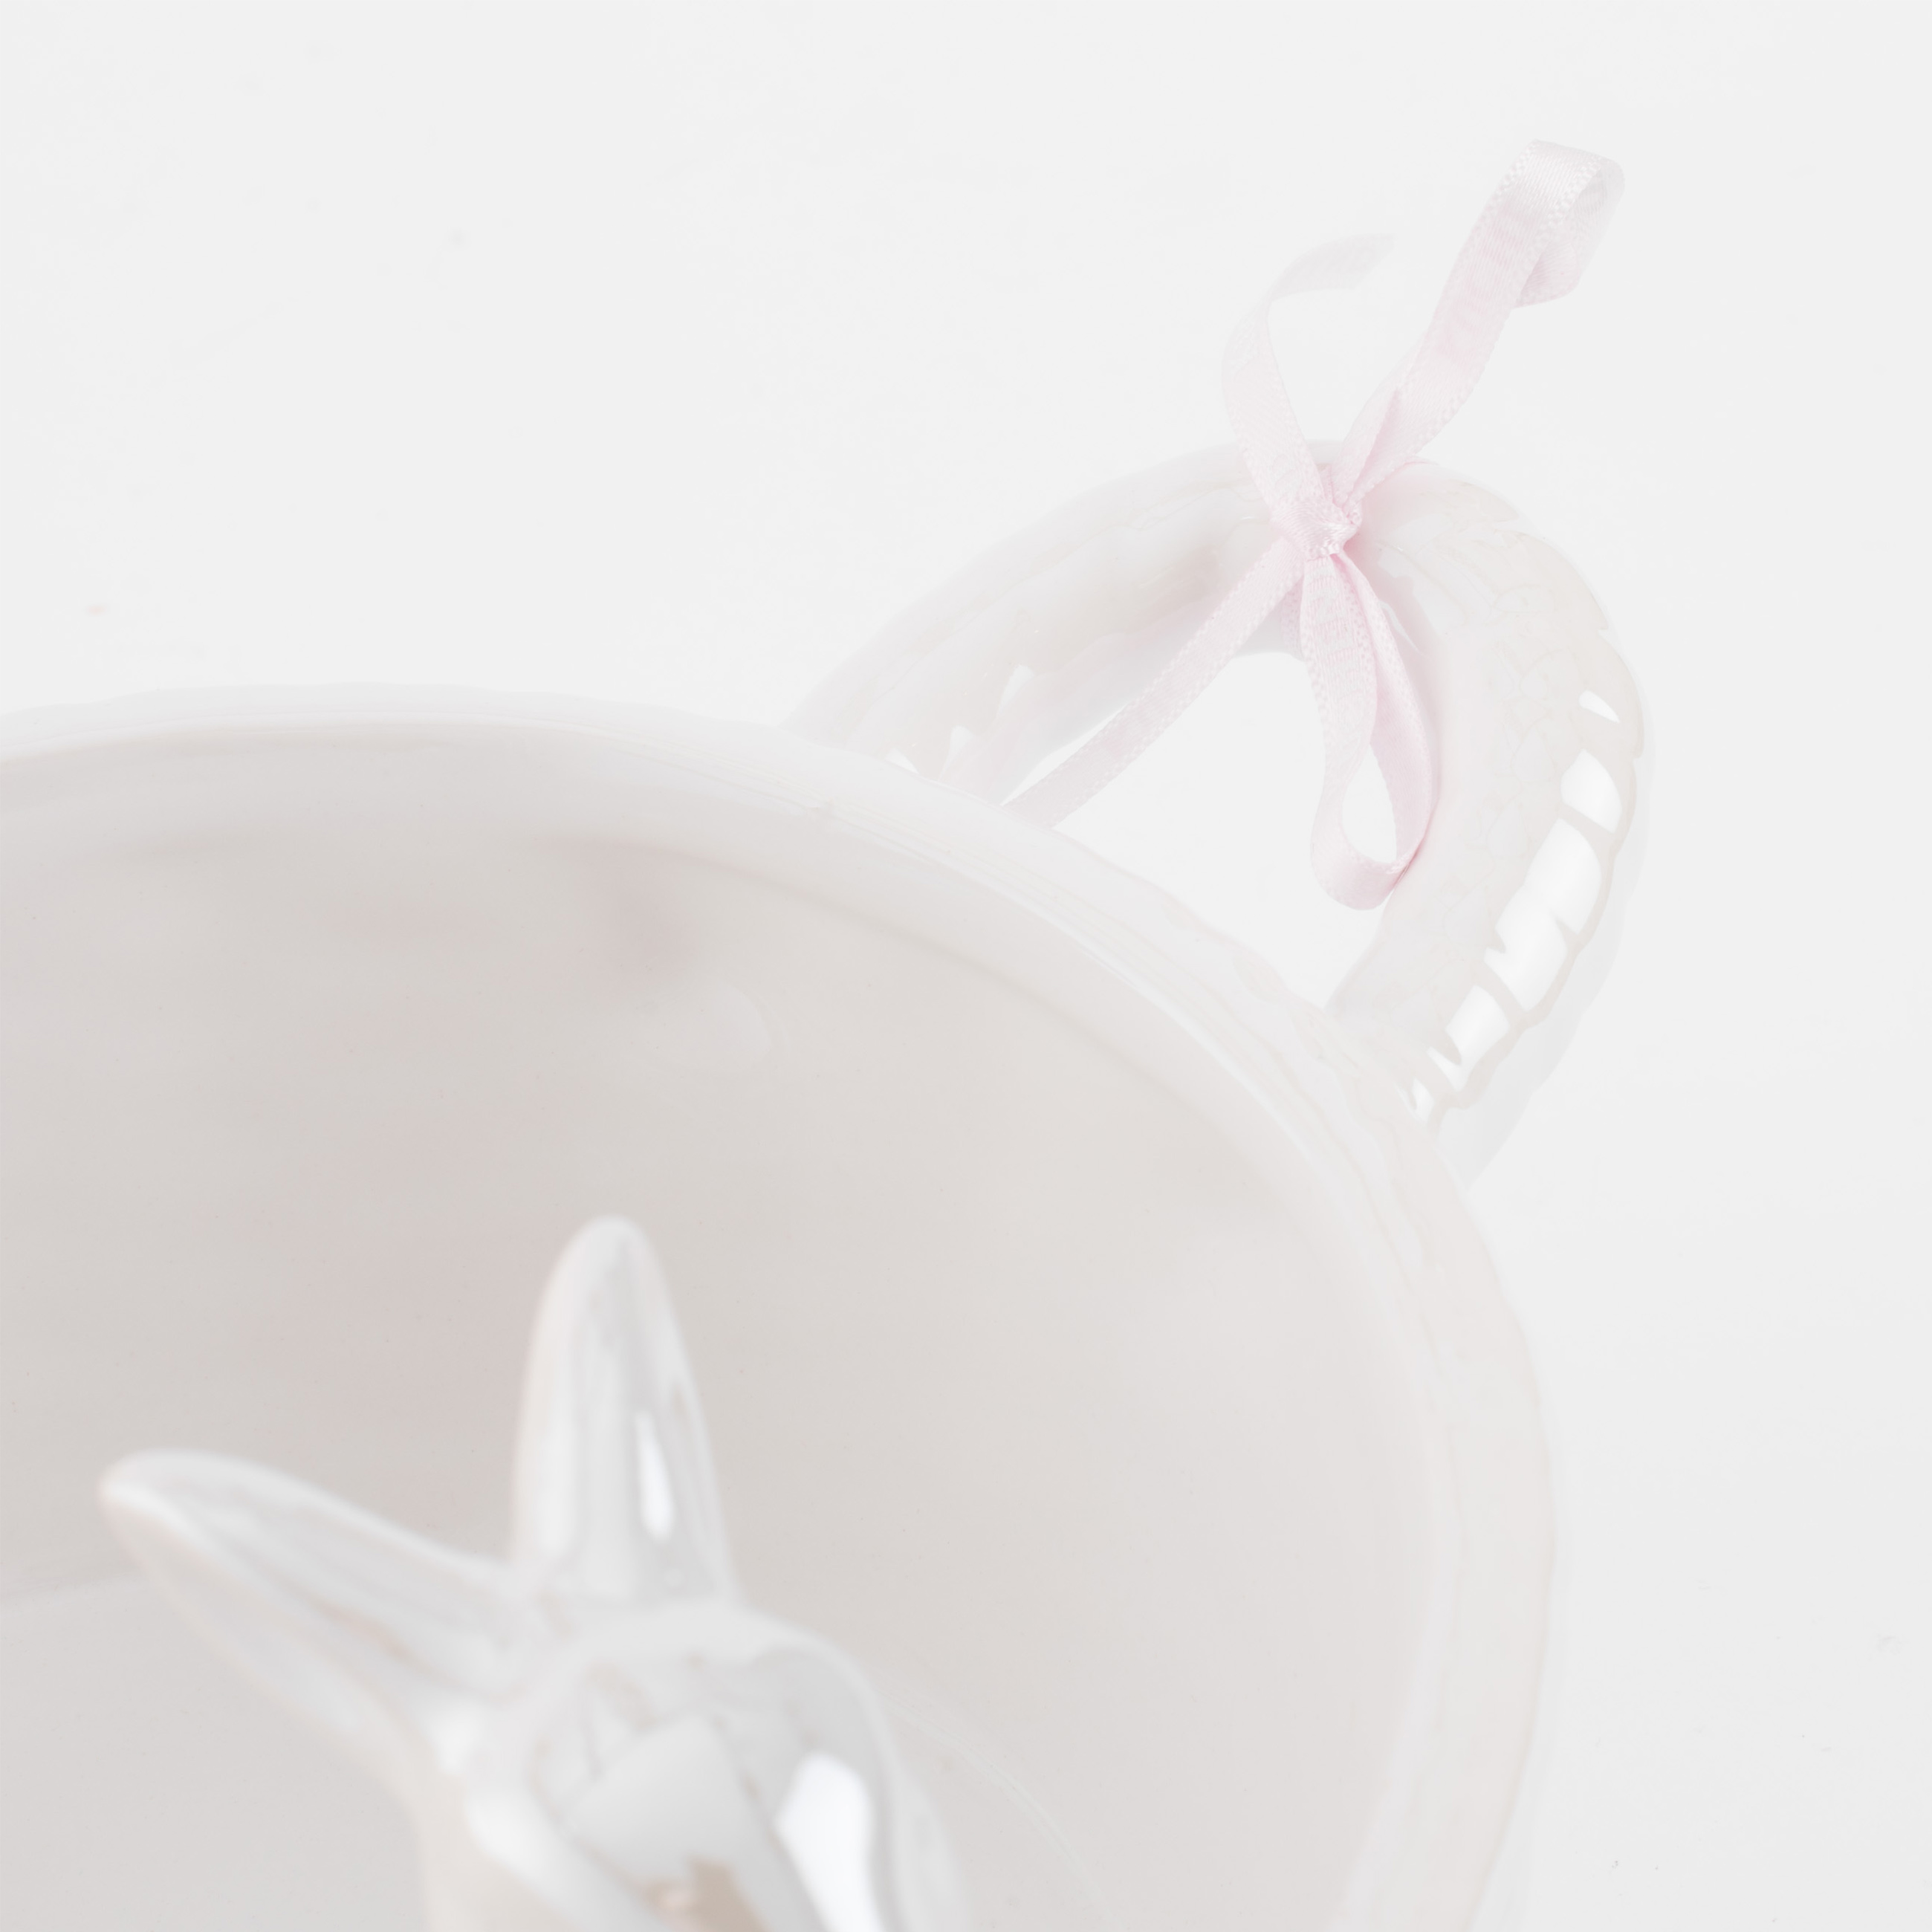 Конфетница, 30х12 см, с ручками, керамика, белая, перламутр, Два кролика в корзине, Easter изображение № 5